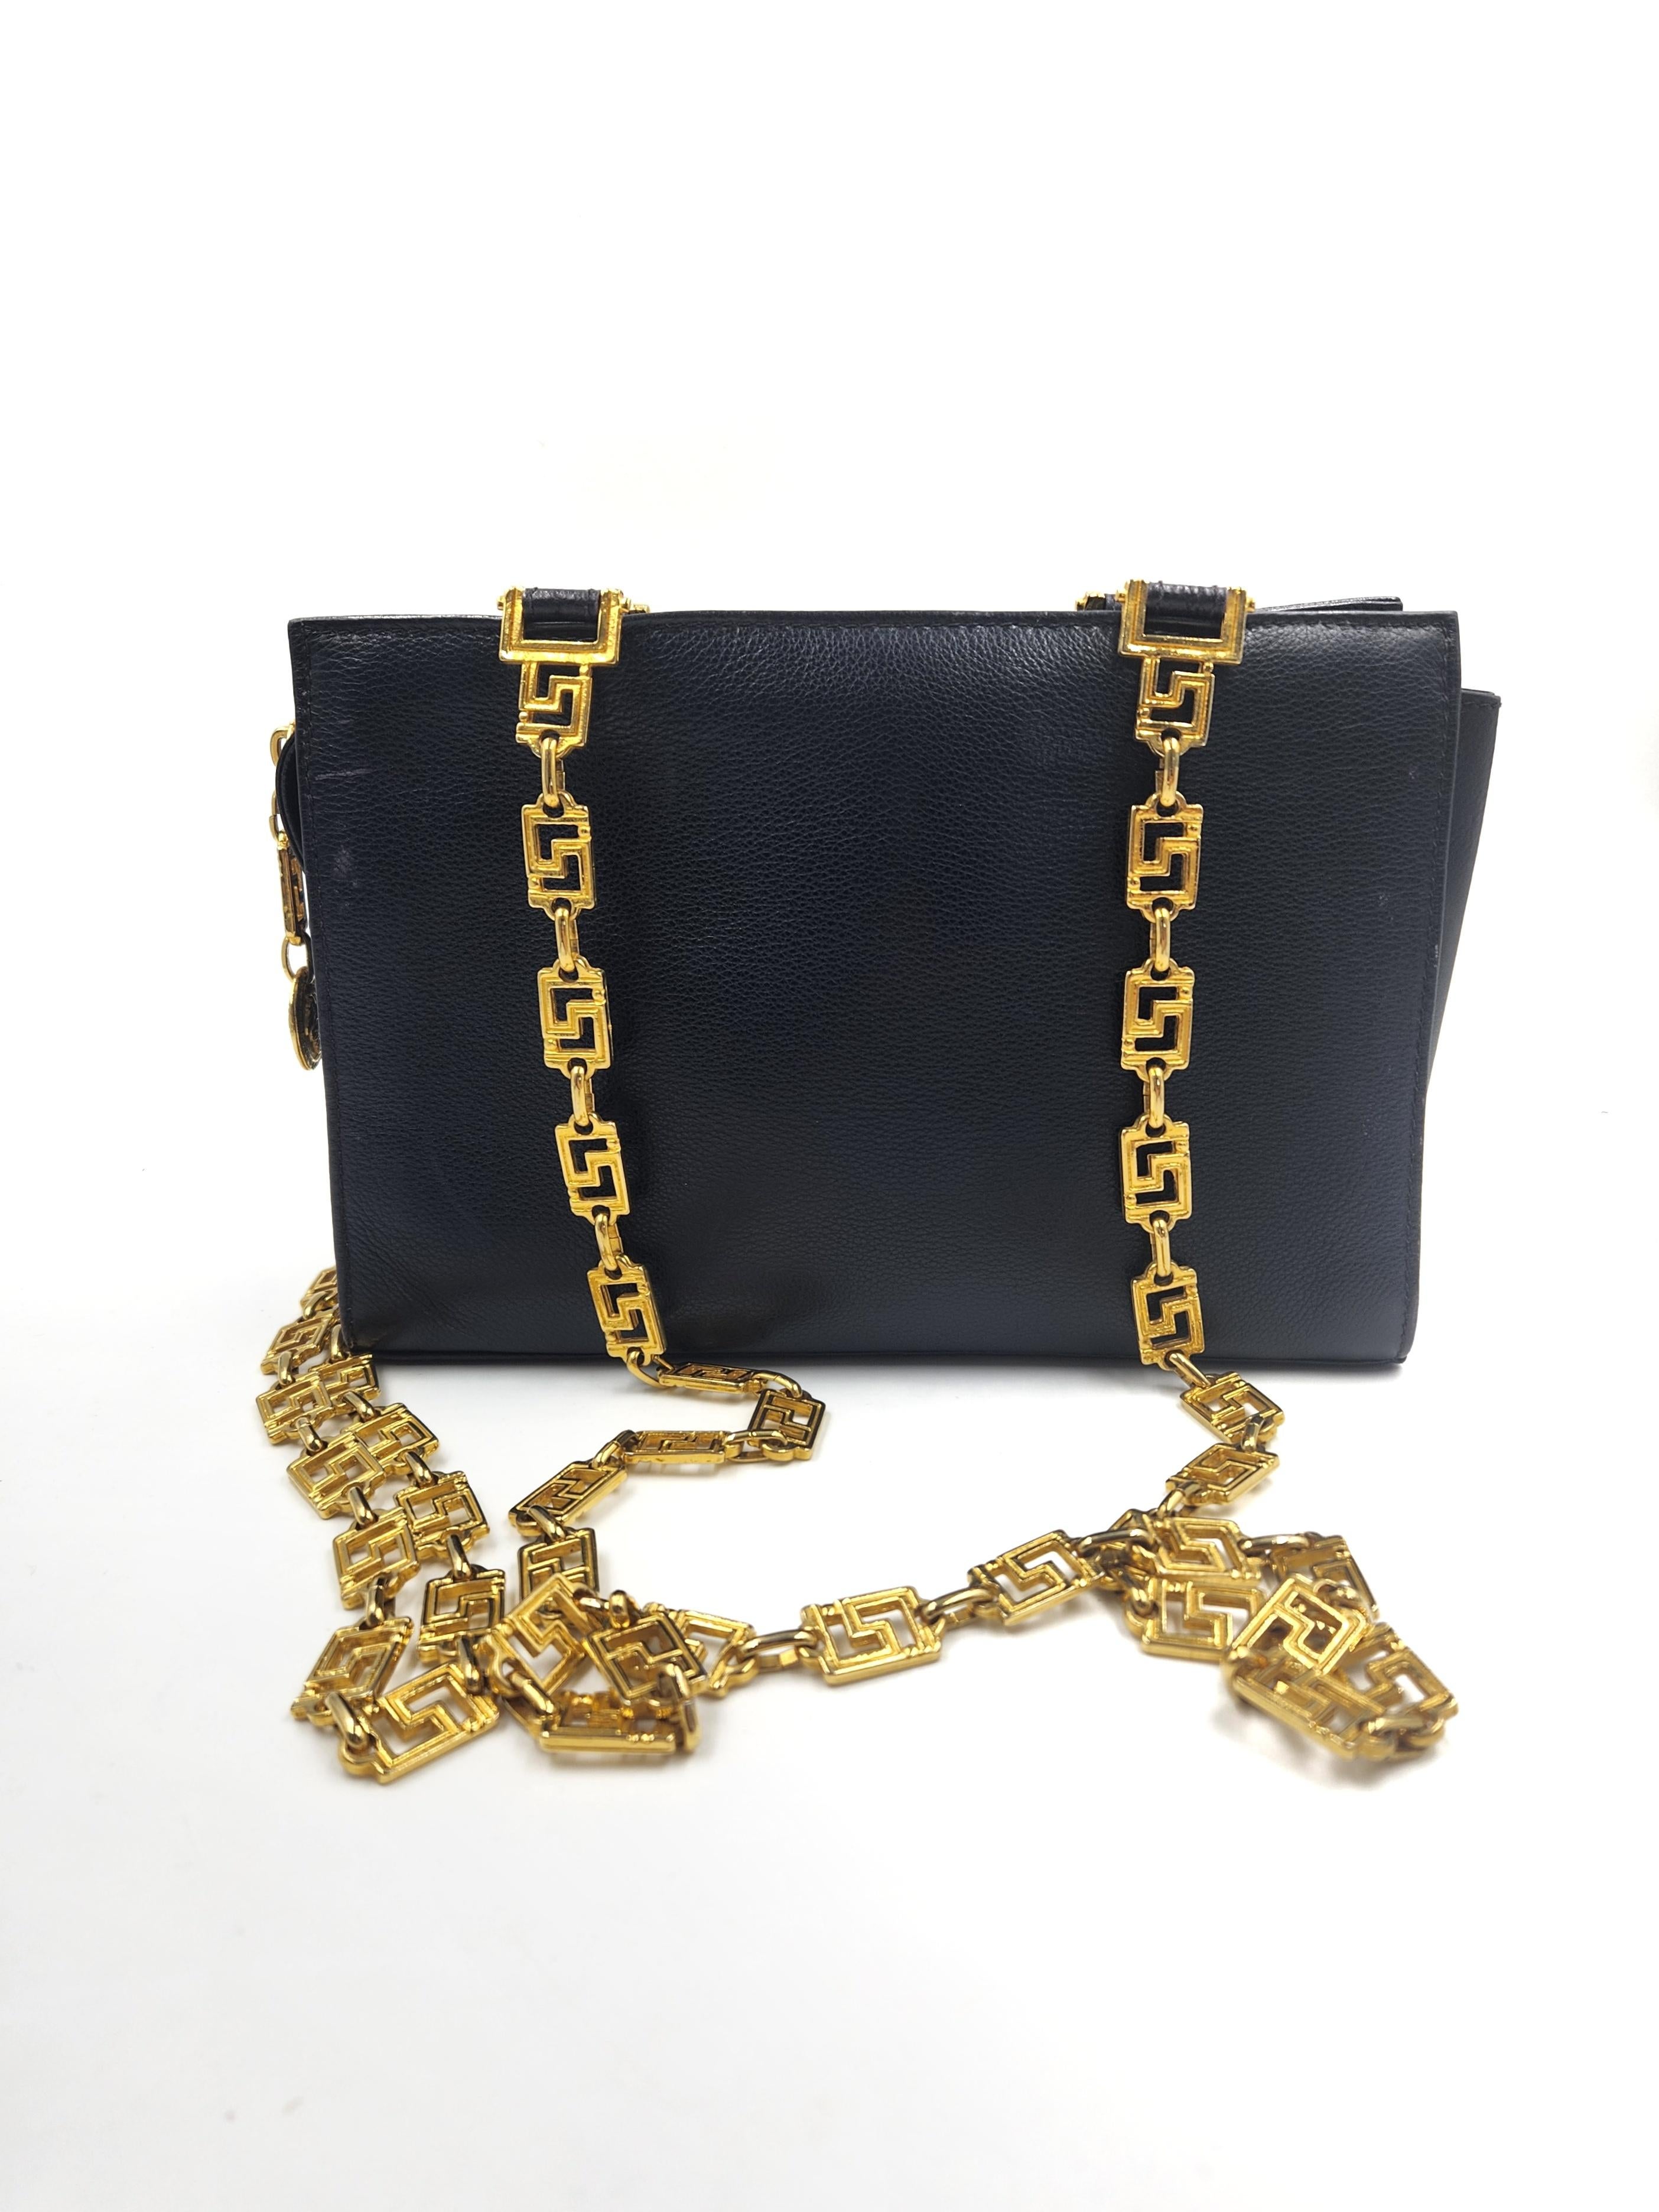 1990's GIANNI VERSACE Medusa Medallion Greca Chain Women's Black Handbag BAG 1